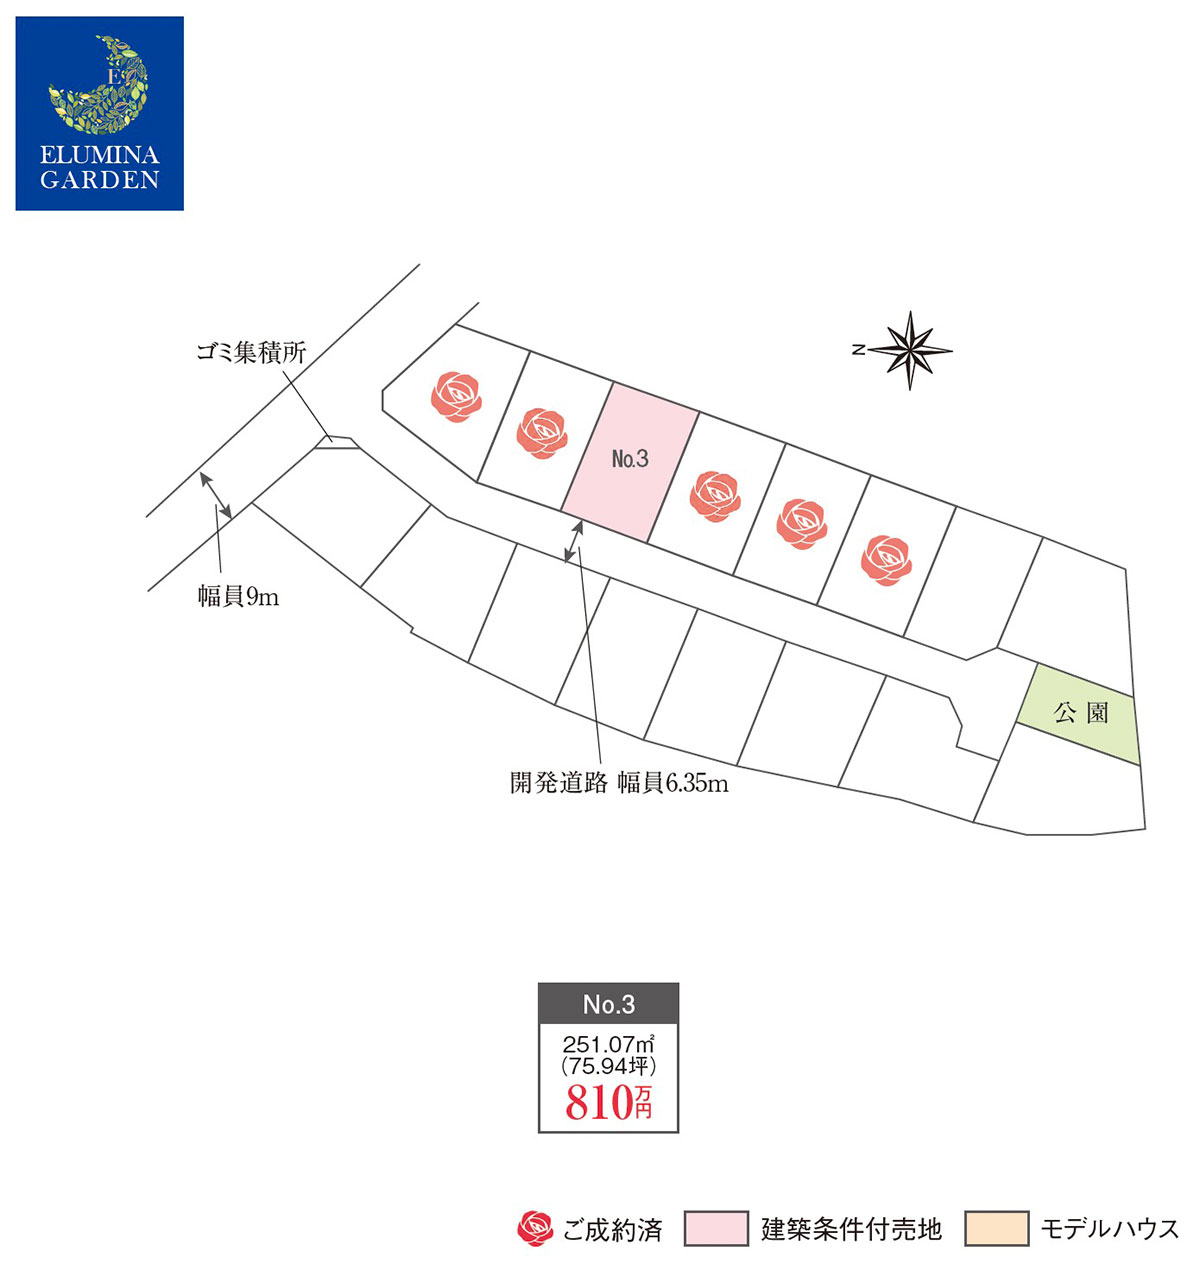 水戸市平須町（全6区画）区画図・販売状況